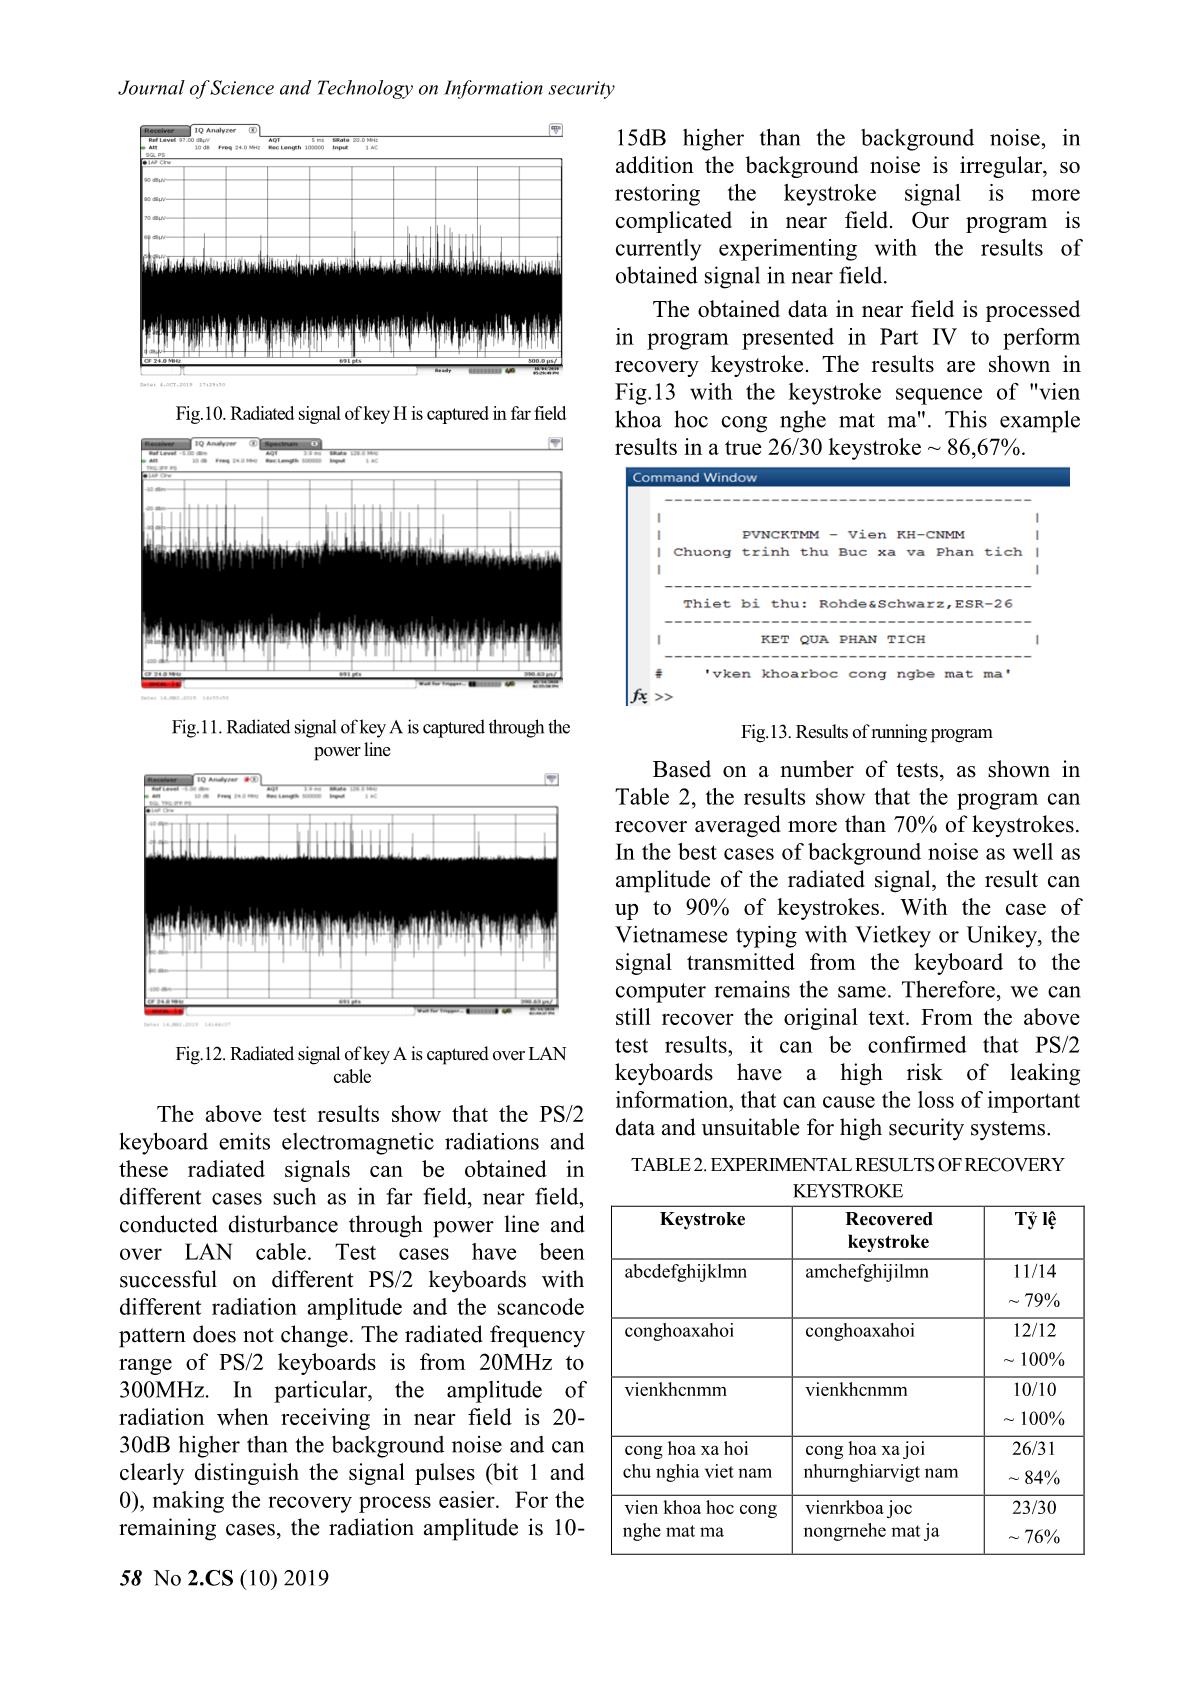 Information leakage through electromagnetic radiation of ps/2 keyboard trang 8